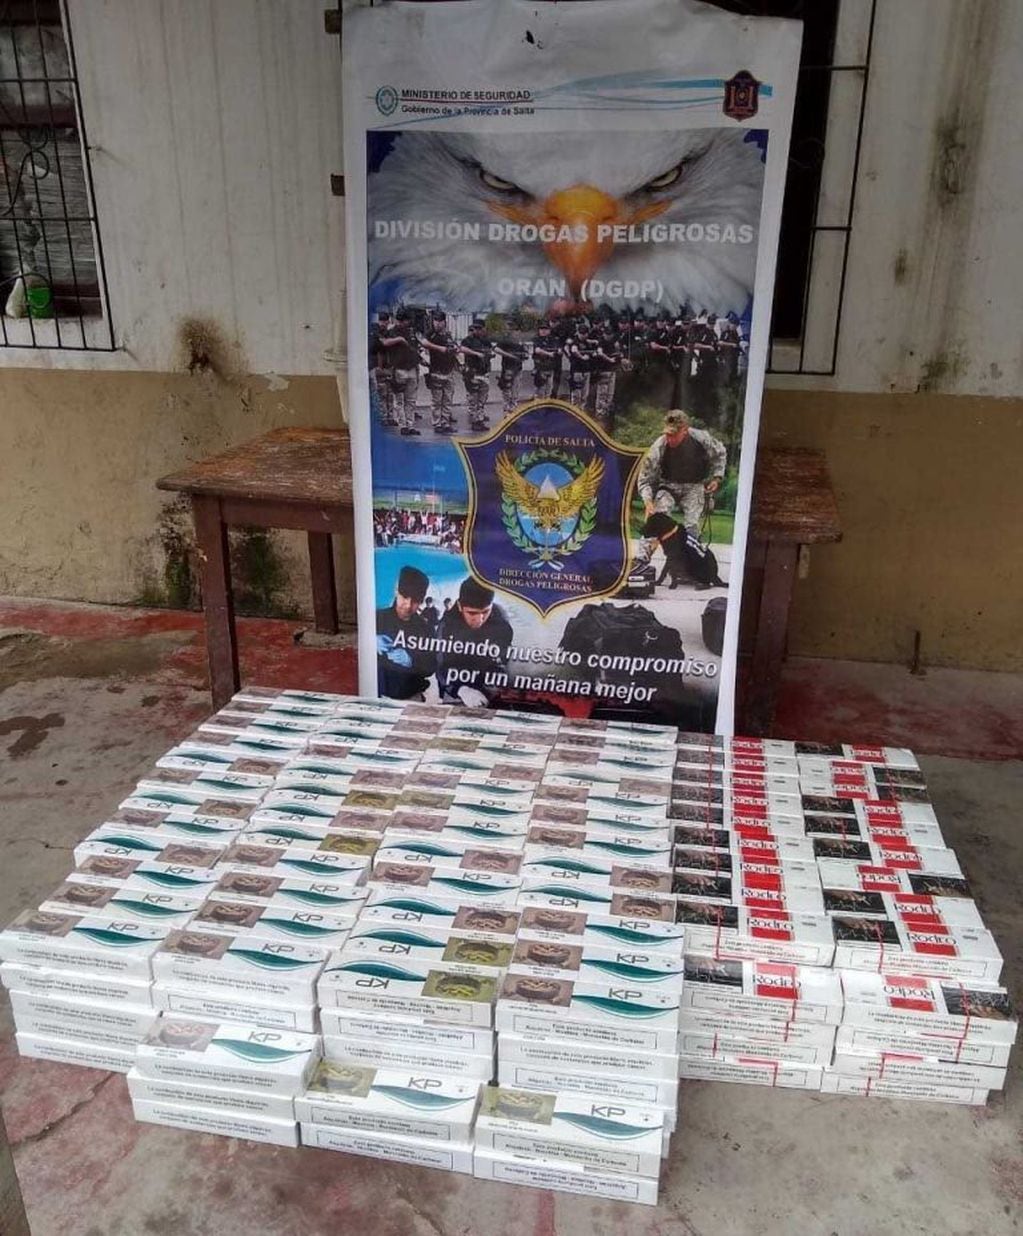 Cargamento ilegal de cigarrillos en Salta (Prensa POlicía de Salta)